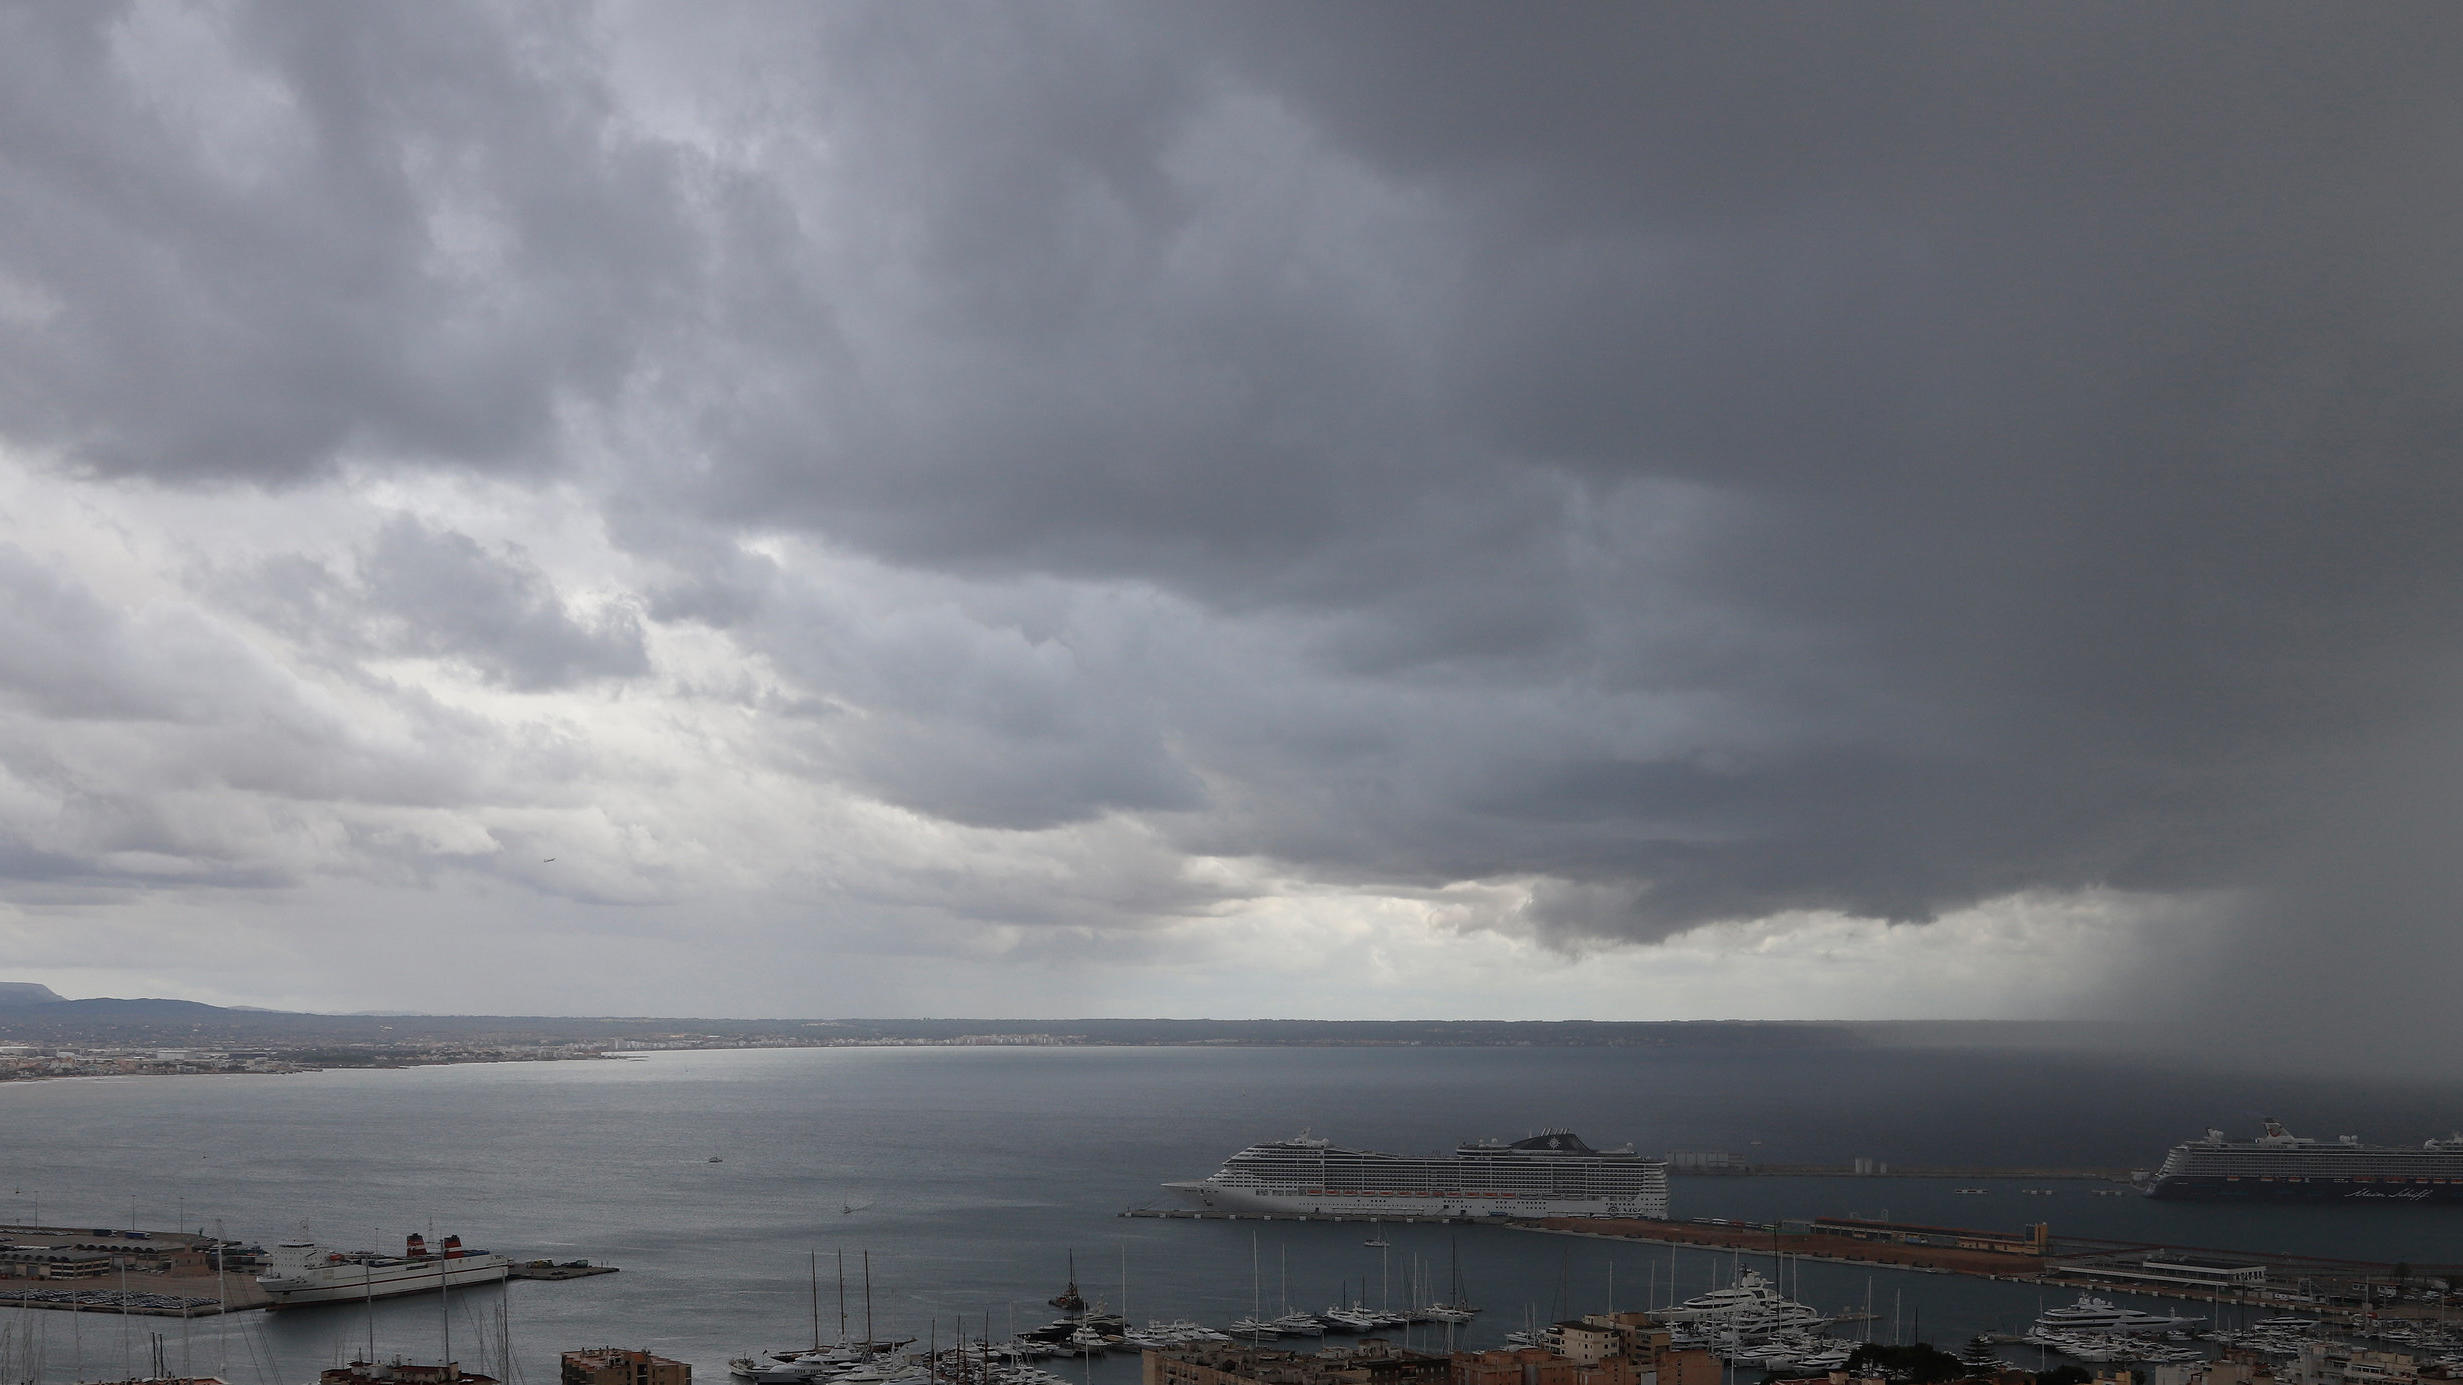 23.10.2019, Spanien, Palma de Mallorca: Dunkle Regenwolken hängen über der Bucht und dem Hafen, in dem zwei Kreuzfahrtschiffe liegen. Rund ums Mittelmeer haben heftige Unwetter vielerorts Überflutungen und Schäden  verursacht. Foto: Clara Margais/dpa +++ dpa-Bildfunk +++